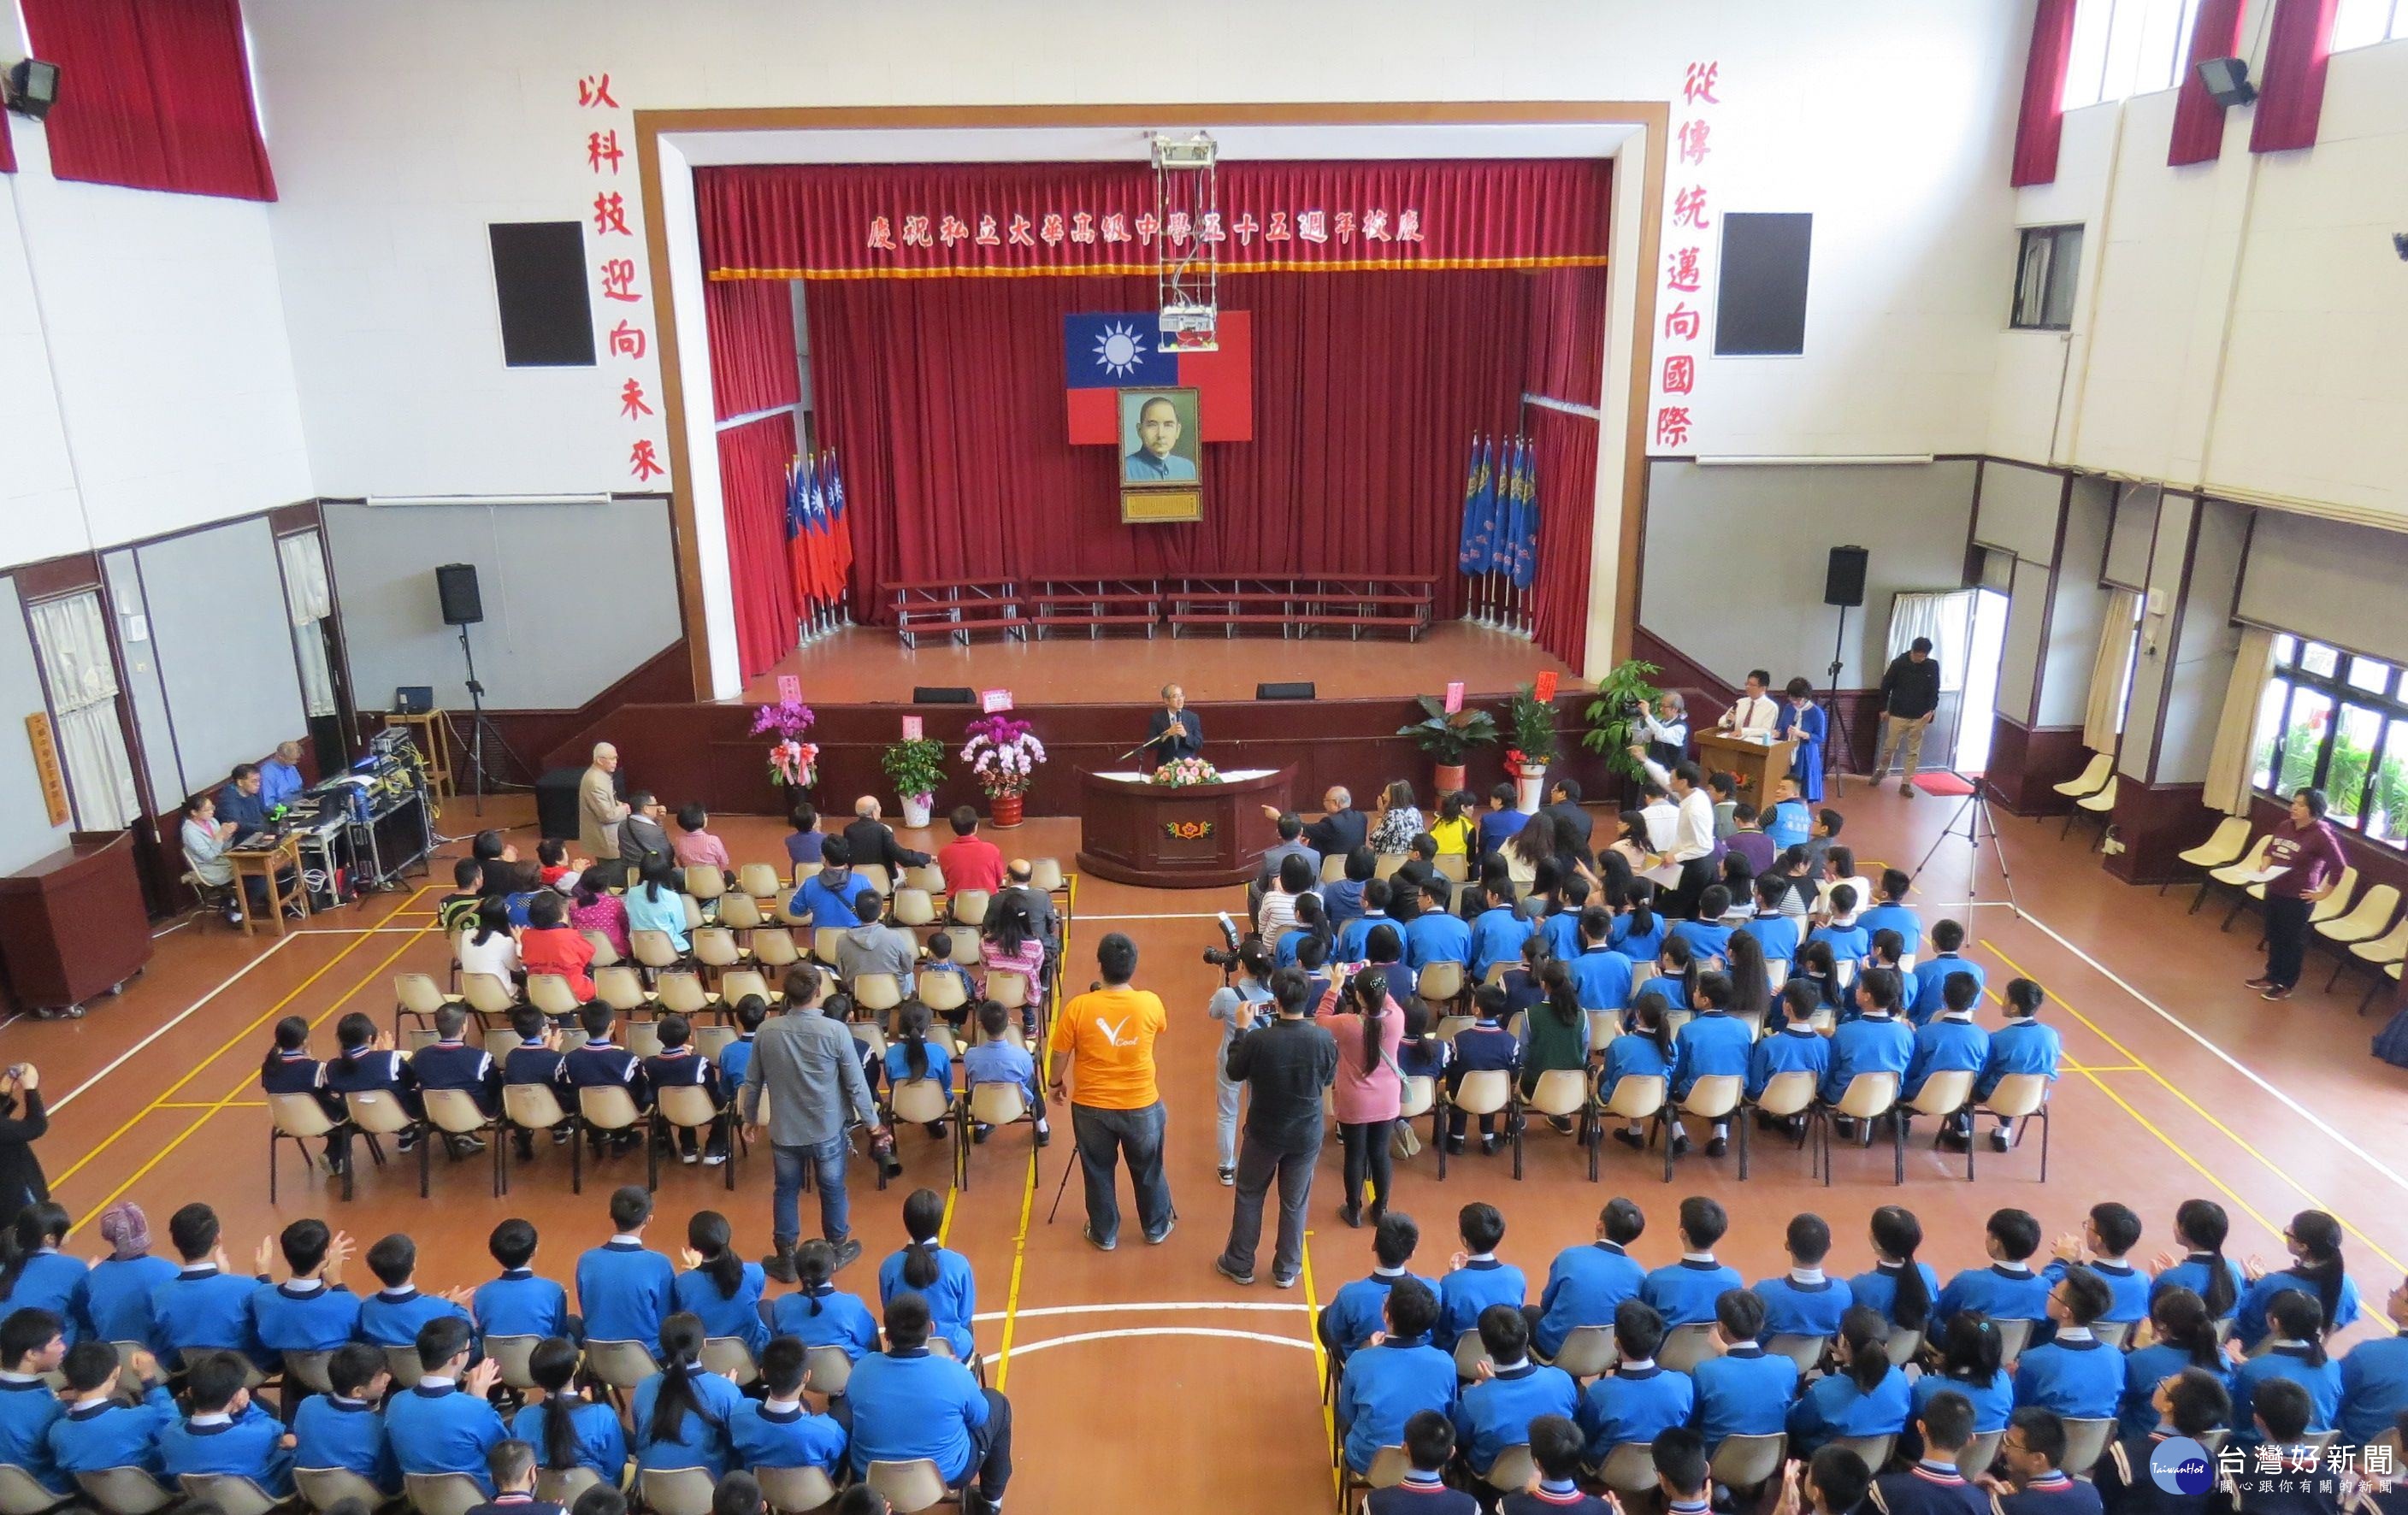 桃園市楊梅區大華中學1舉辦 「大華55 允文允武」的55週年校慶活動。